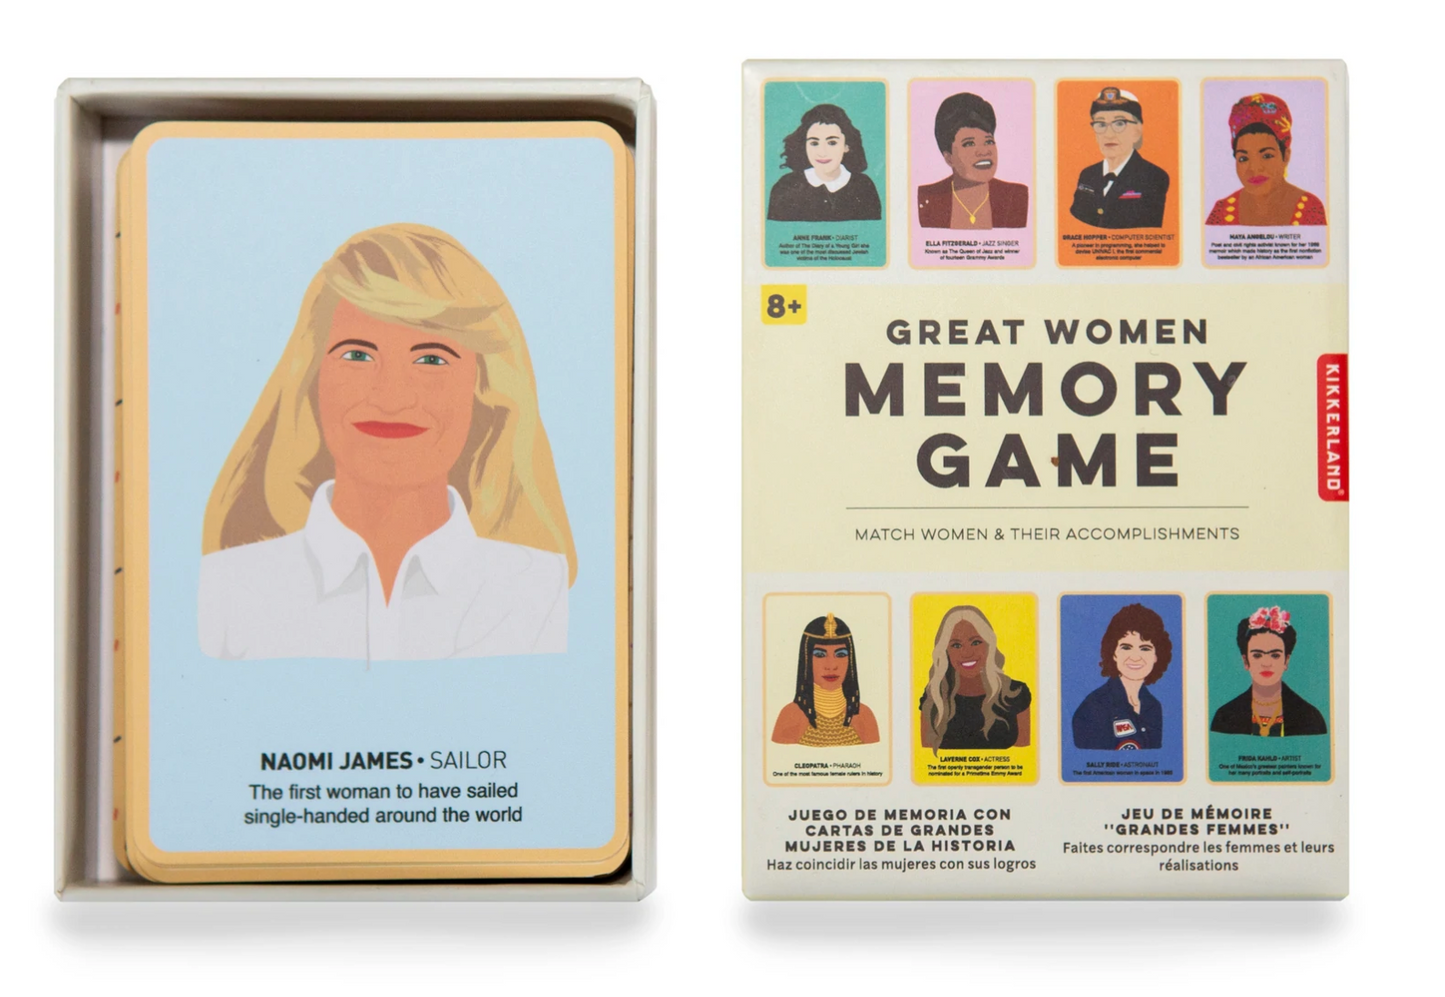 GREAT WOMEN MEMORY GAME